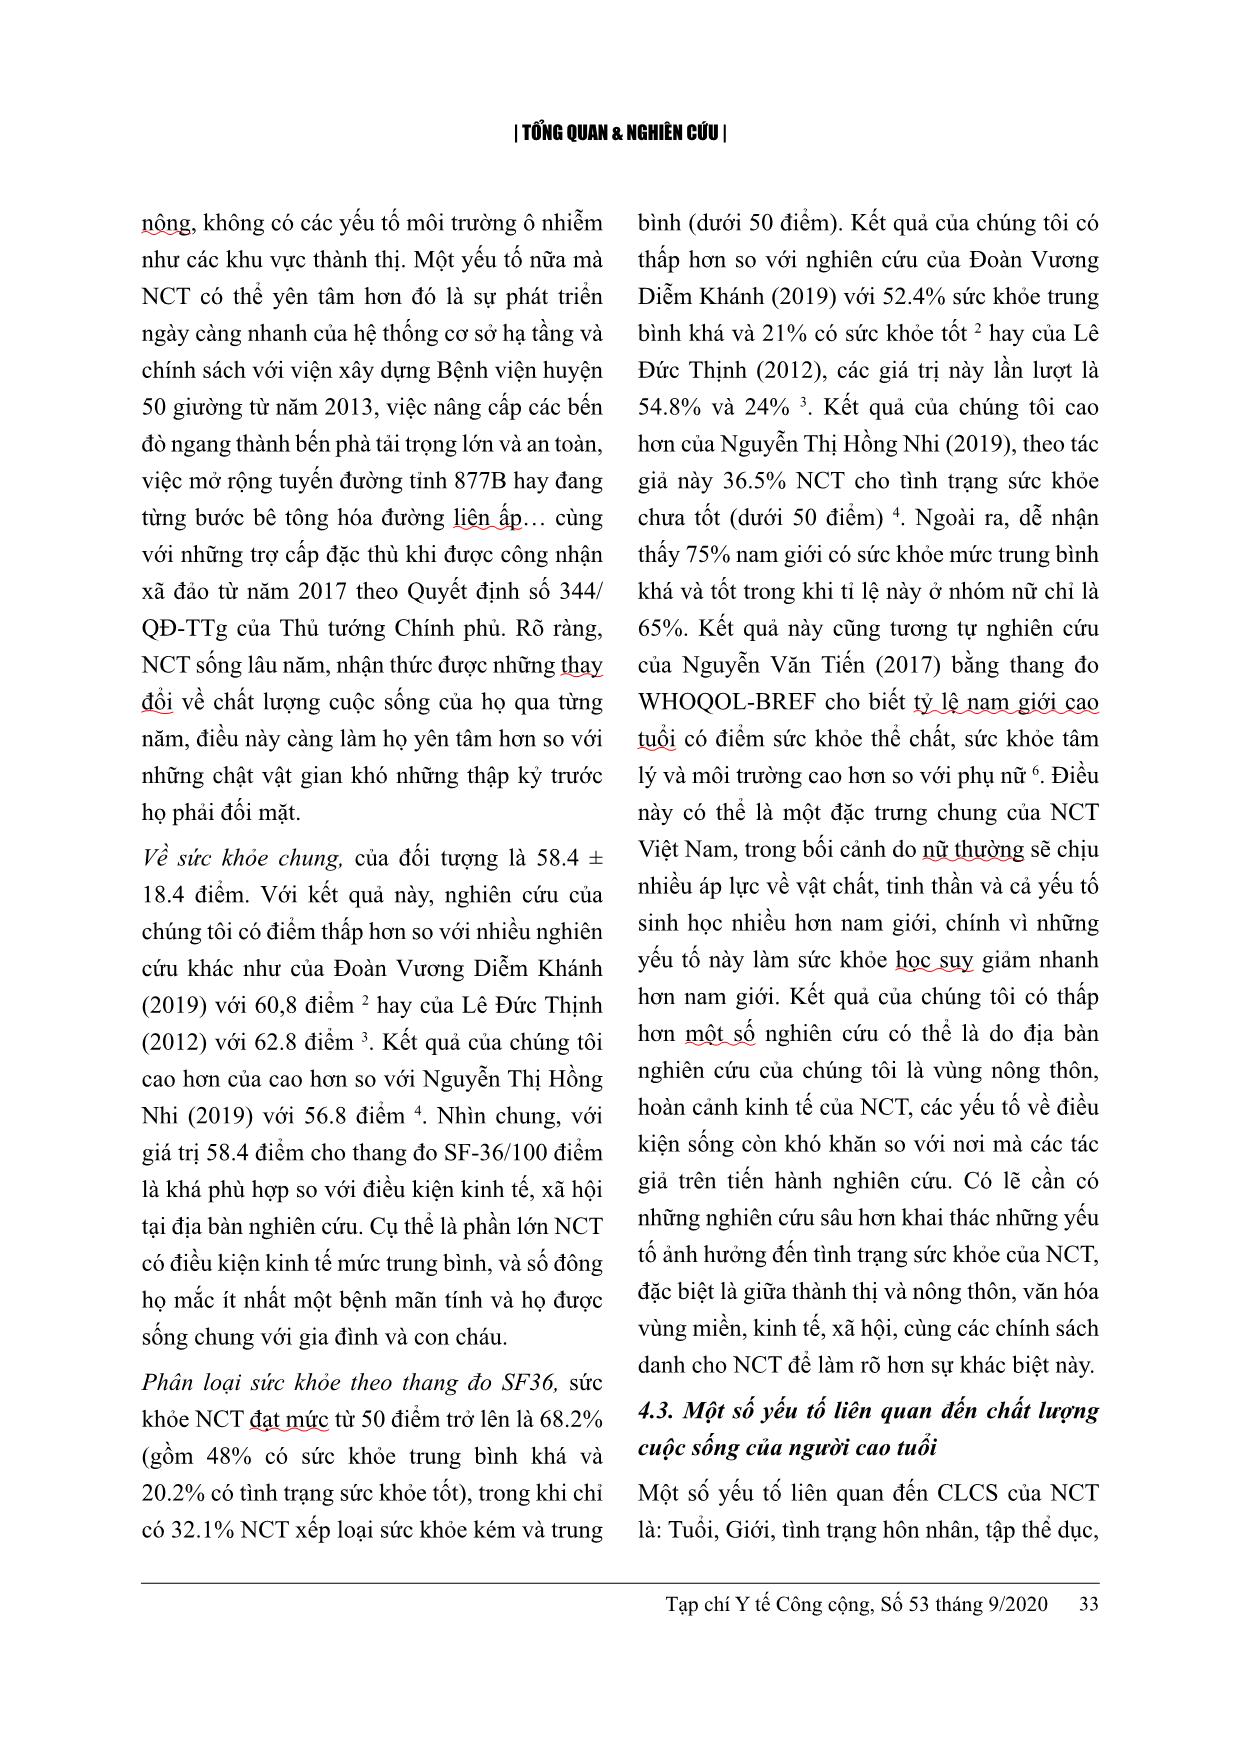 Chất lượng cuộc sống và một số yếu tố liên quan ở người cao tuổi tại huyện Tân Phú Đông, tỉnh Tiền Giang năm 2020 trang 8